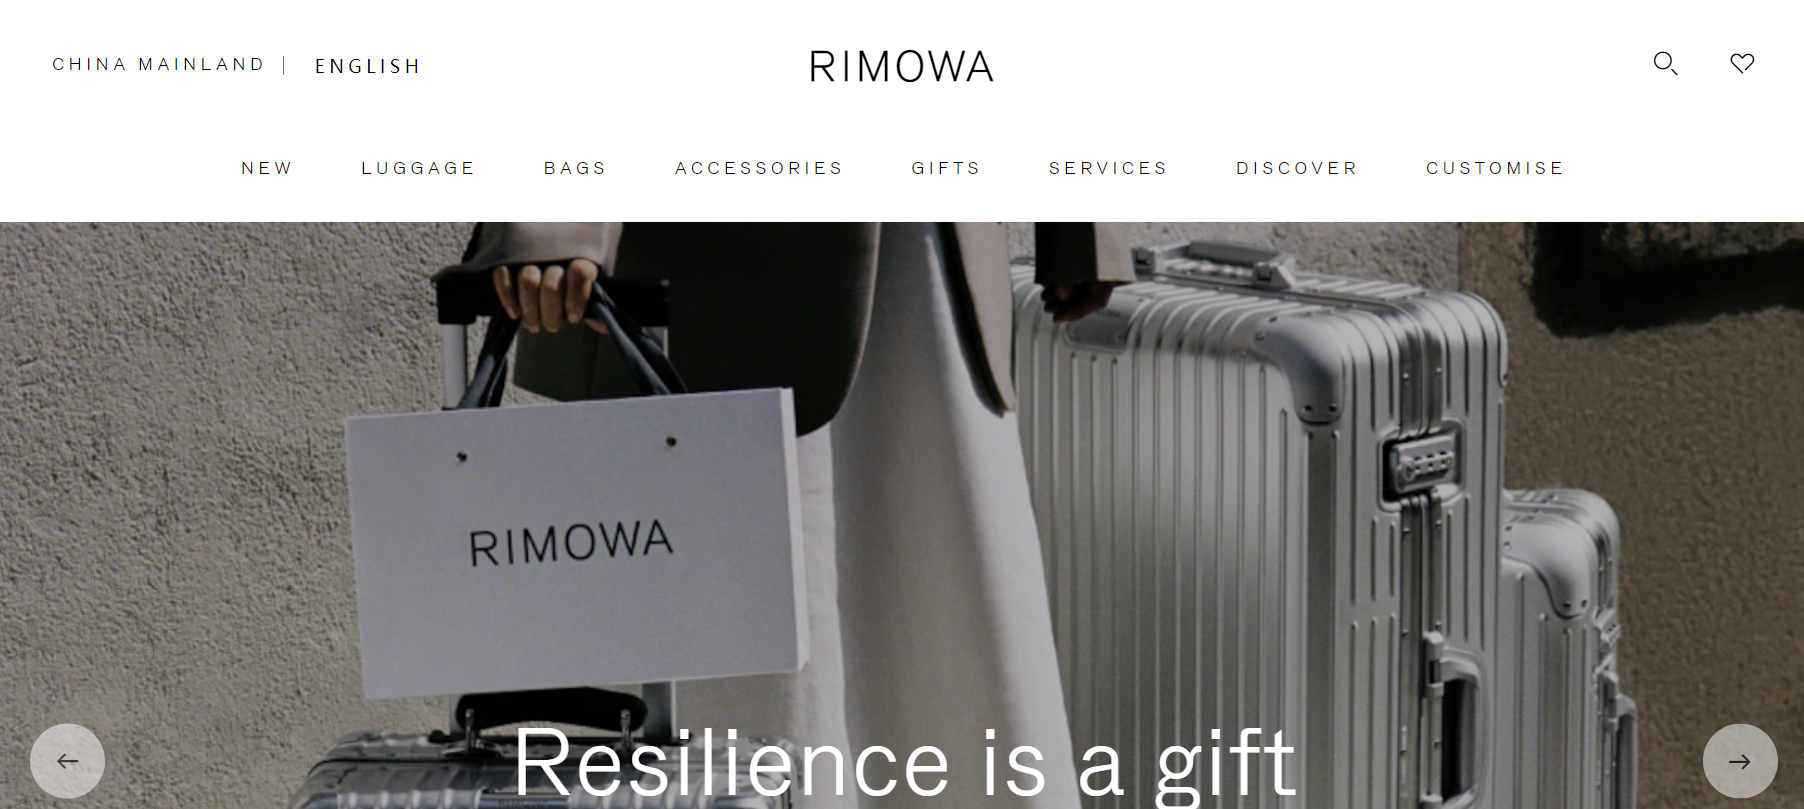 德国奢侈旅行箱品牌 Rimowa与10位设计师合作推出联名系列